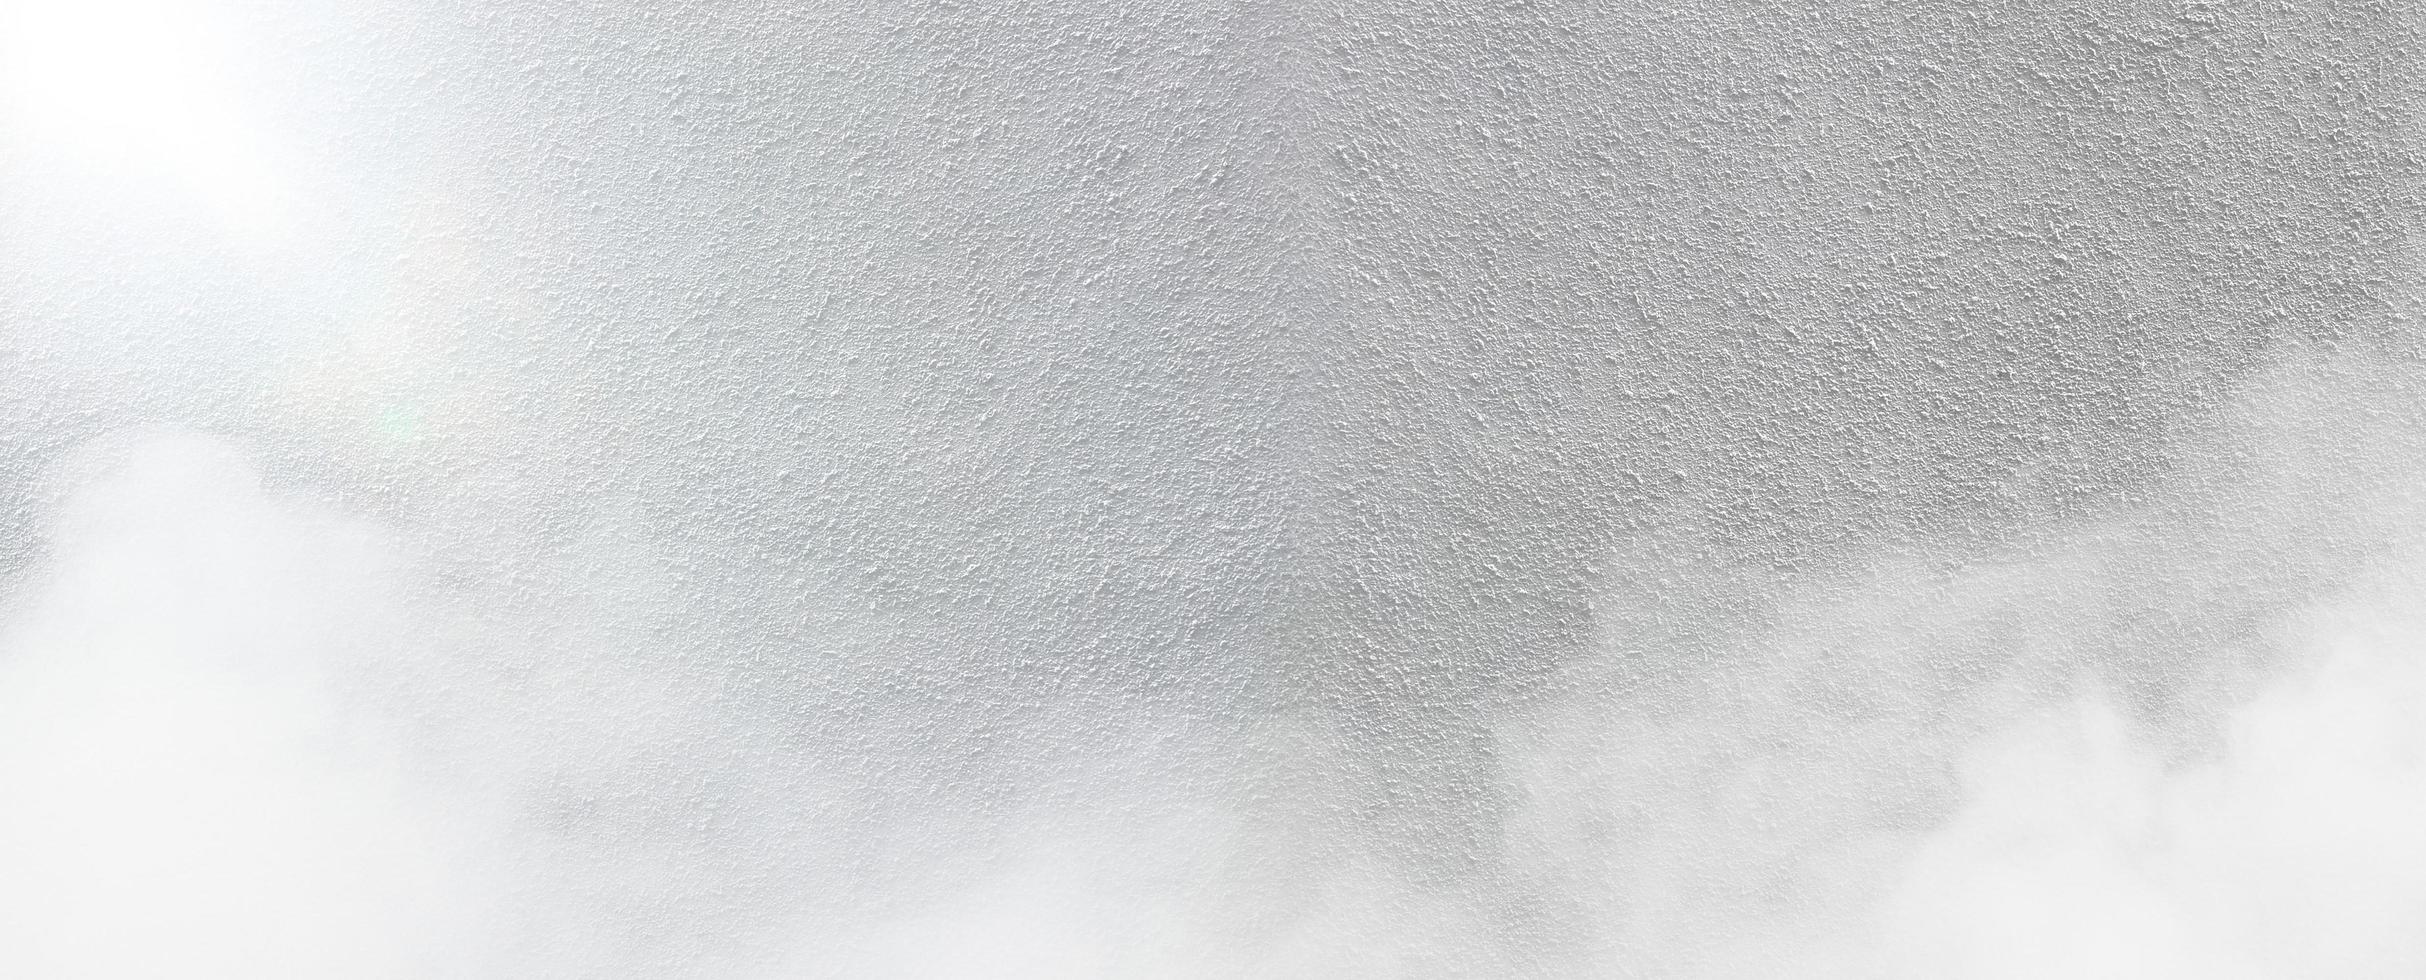 Muro de cemento blanco con fondo de textura de niebla textura áspera foto